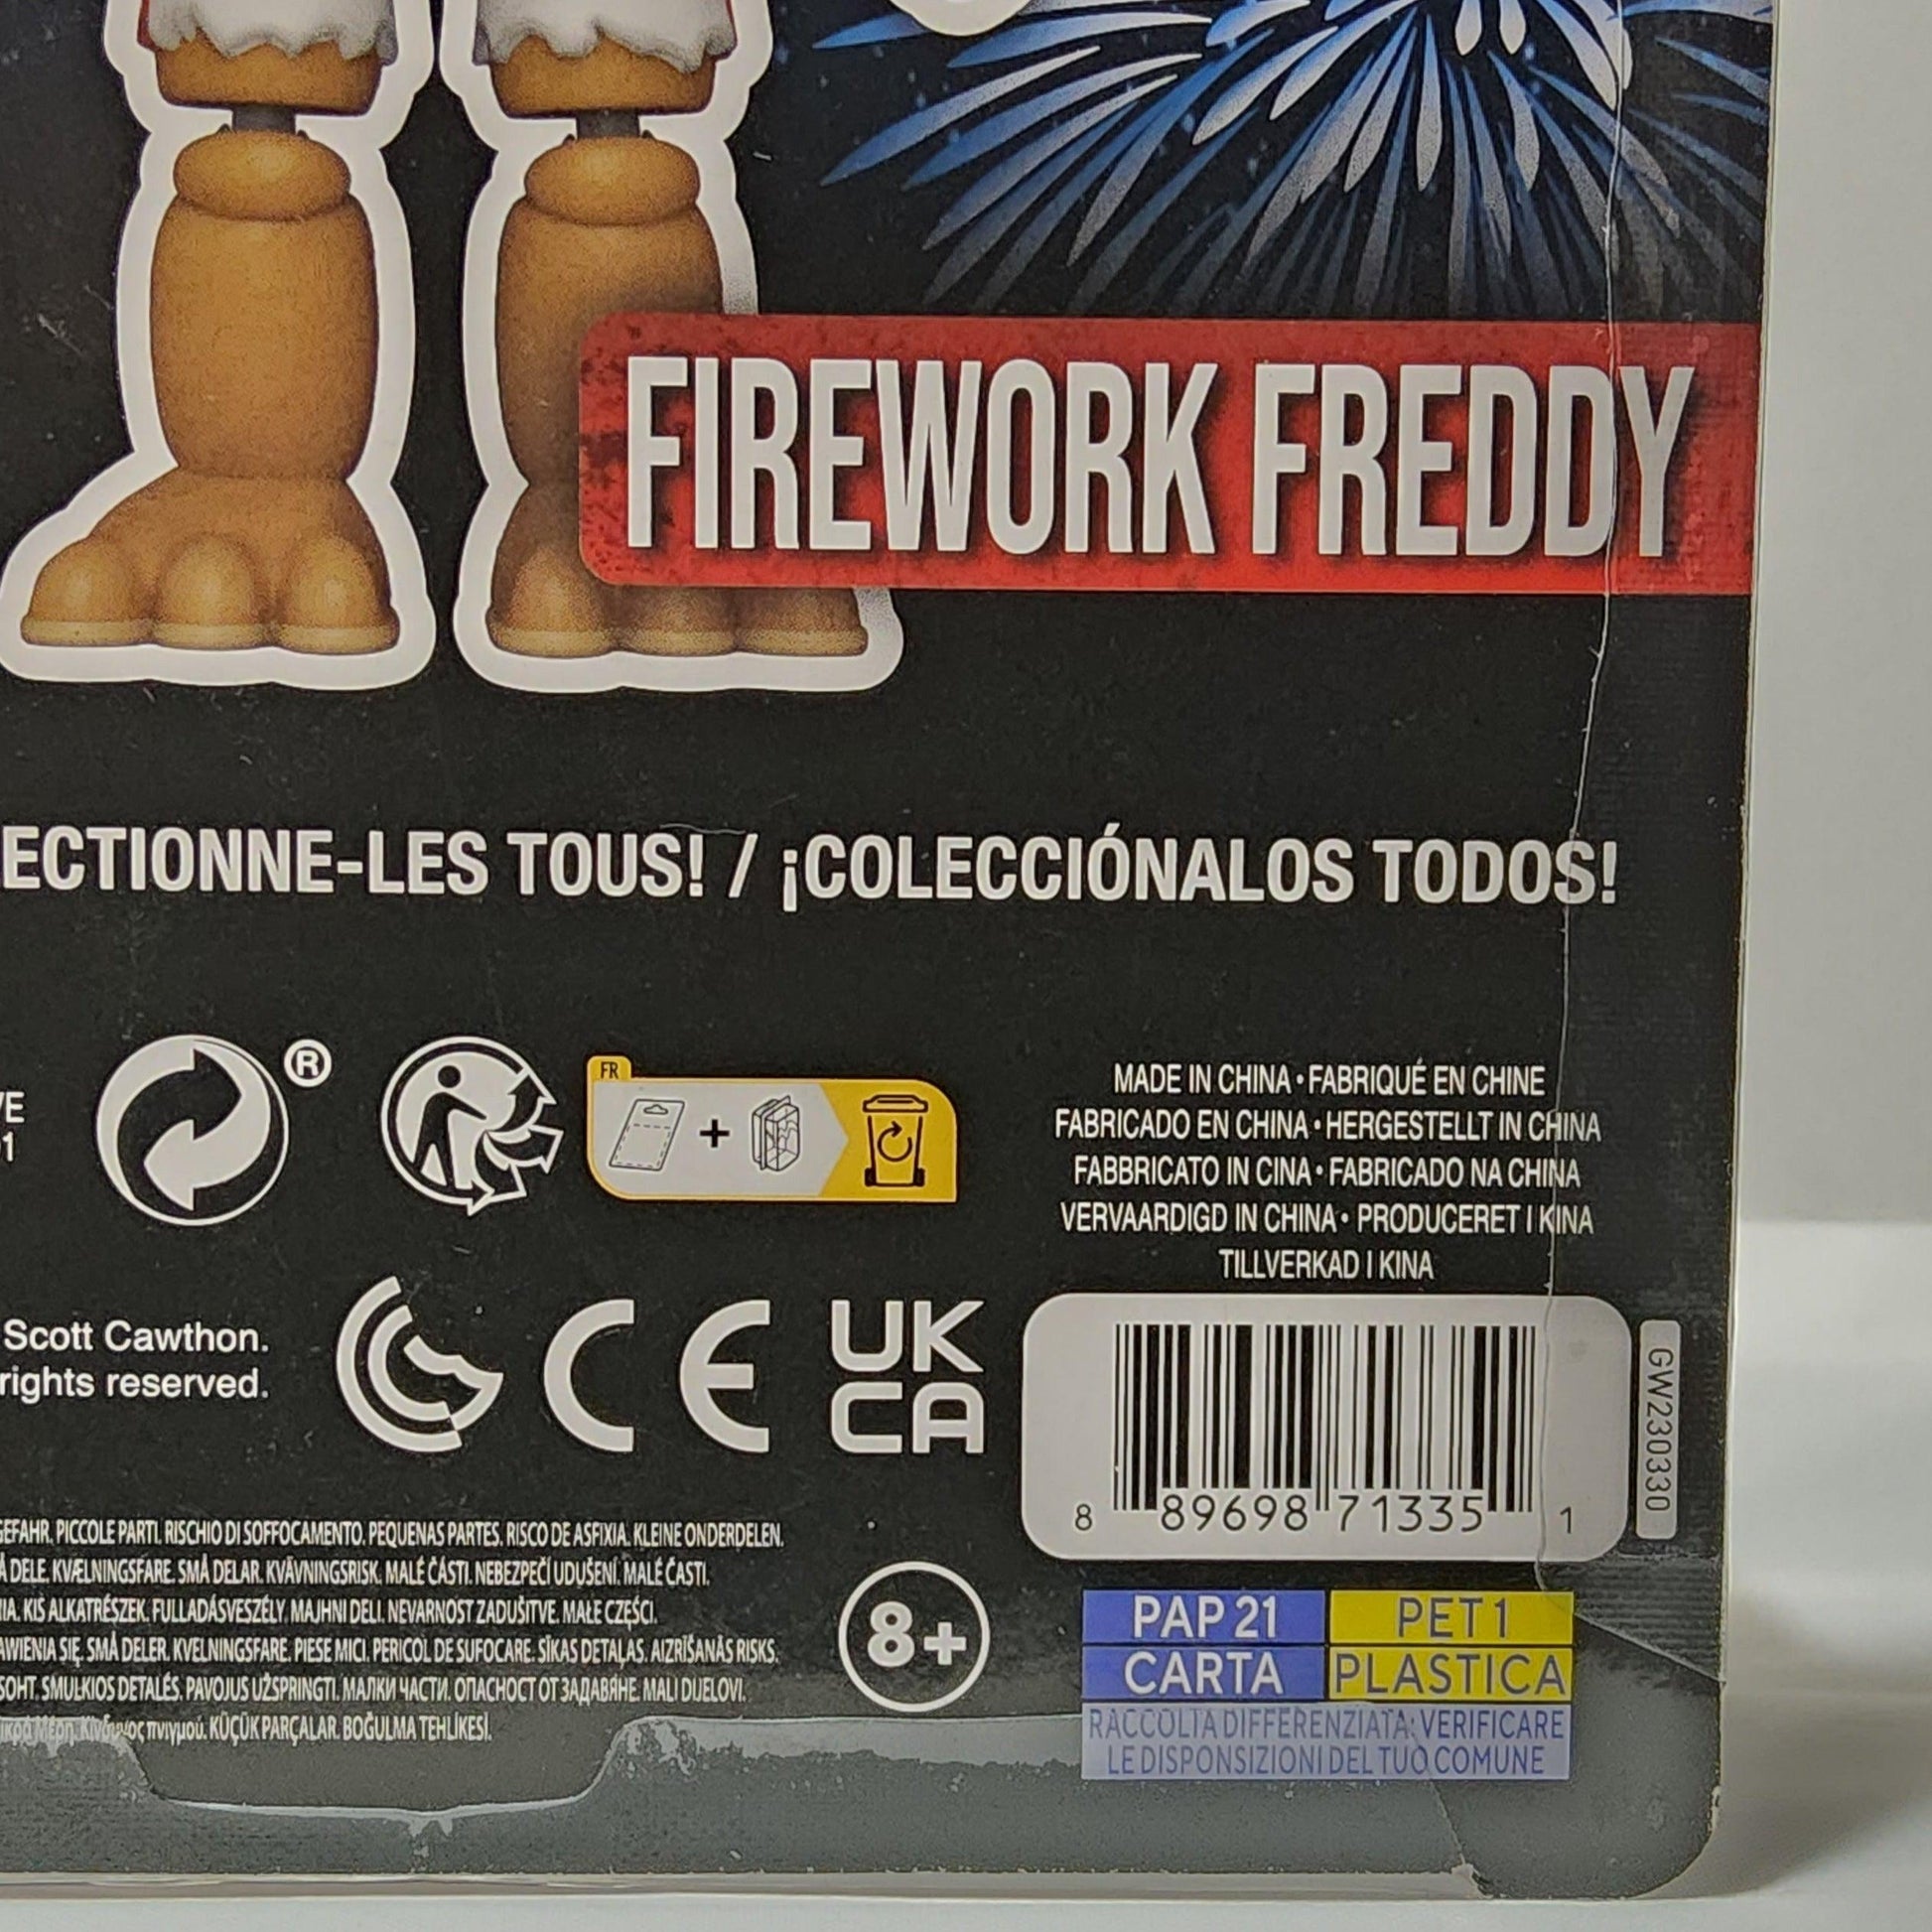  Funko Five Nights at Freddys Firework Freddy